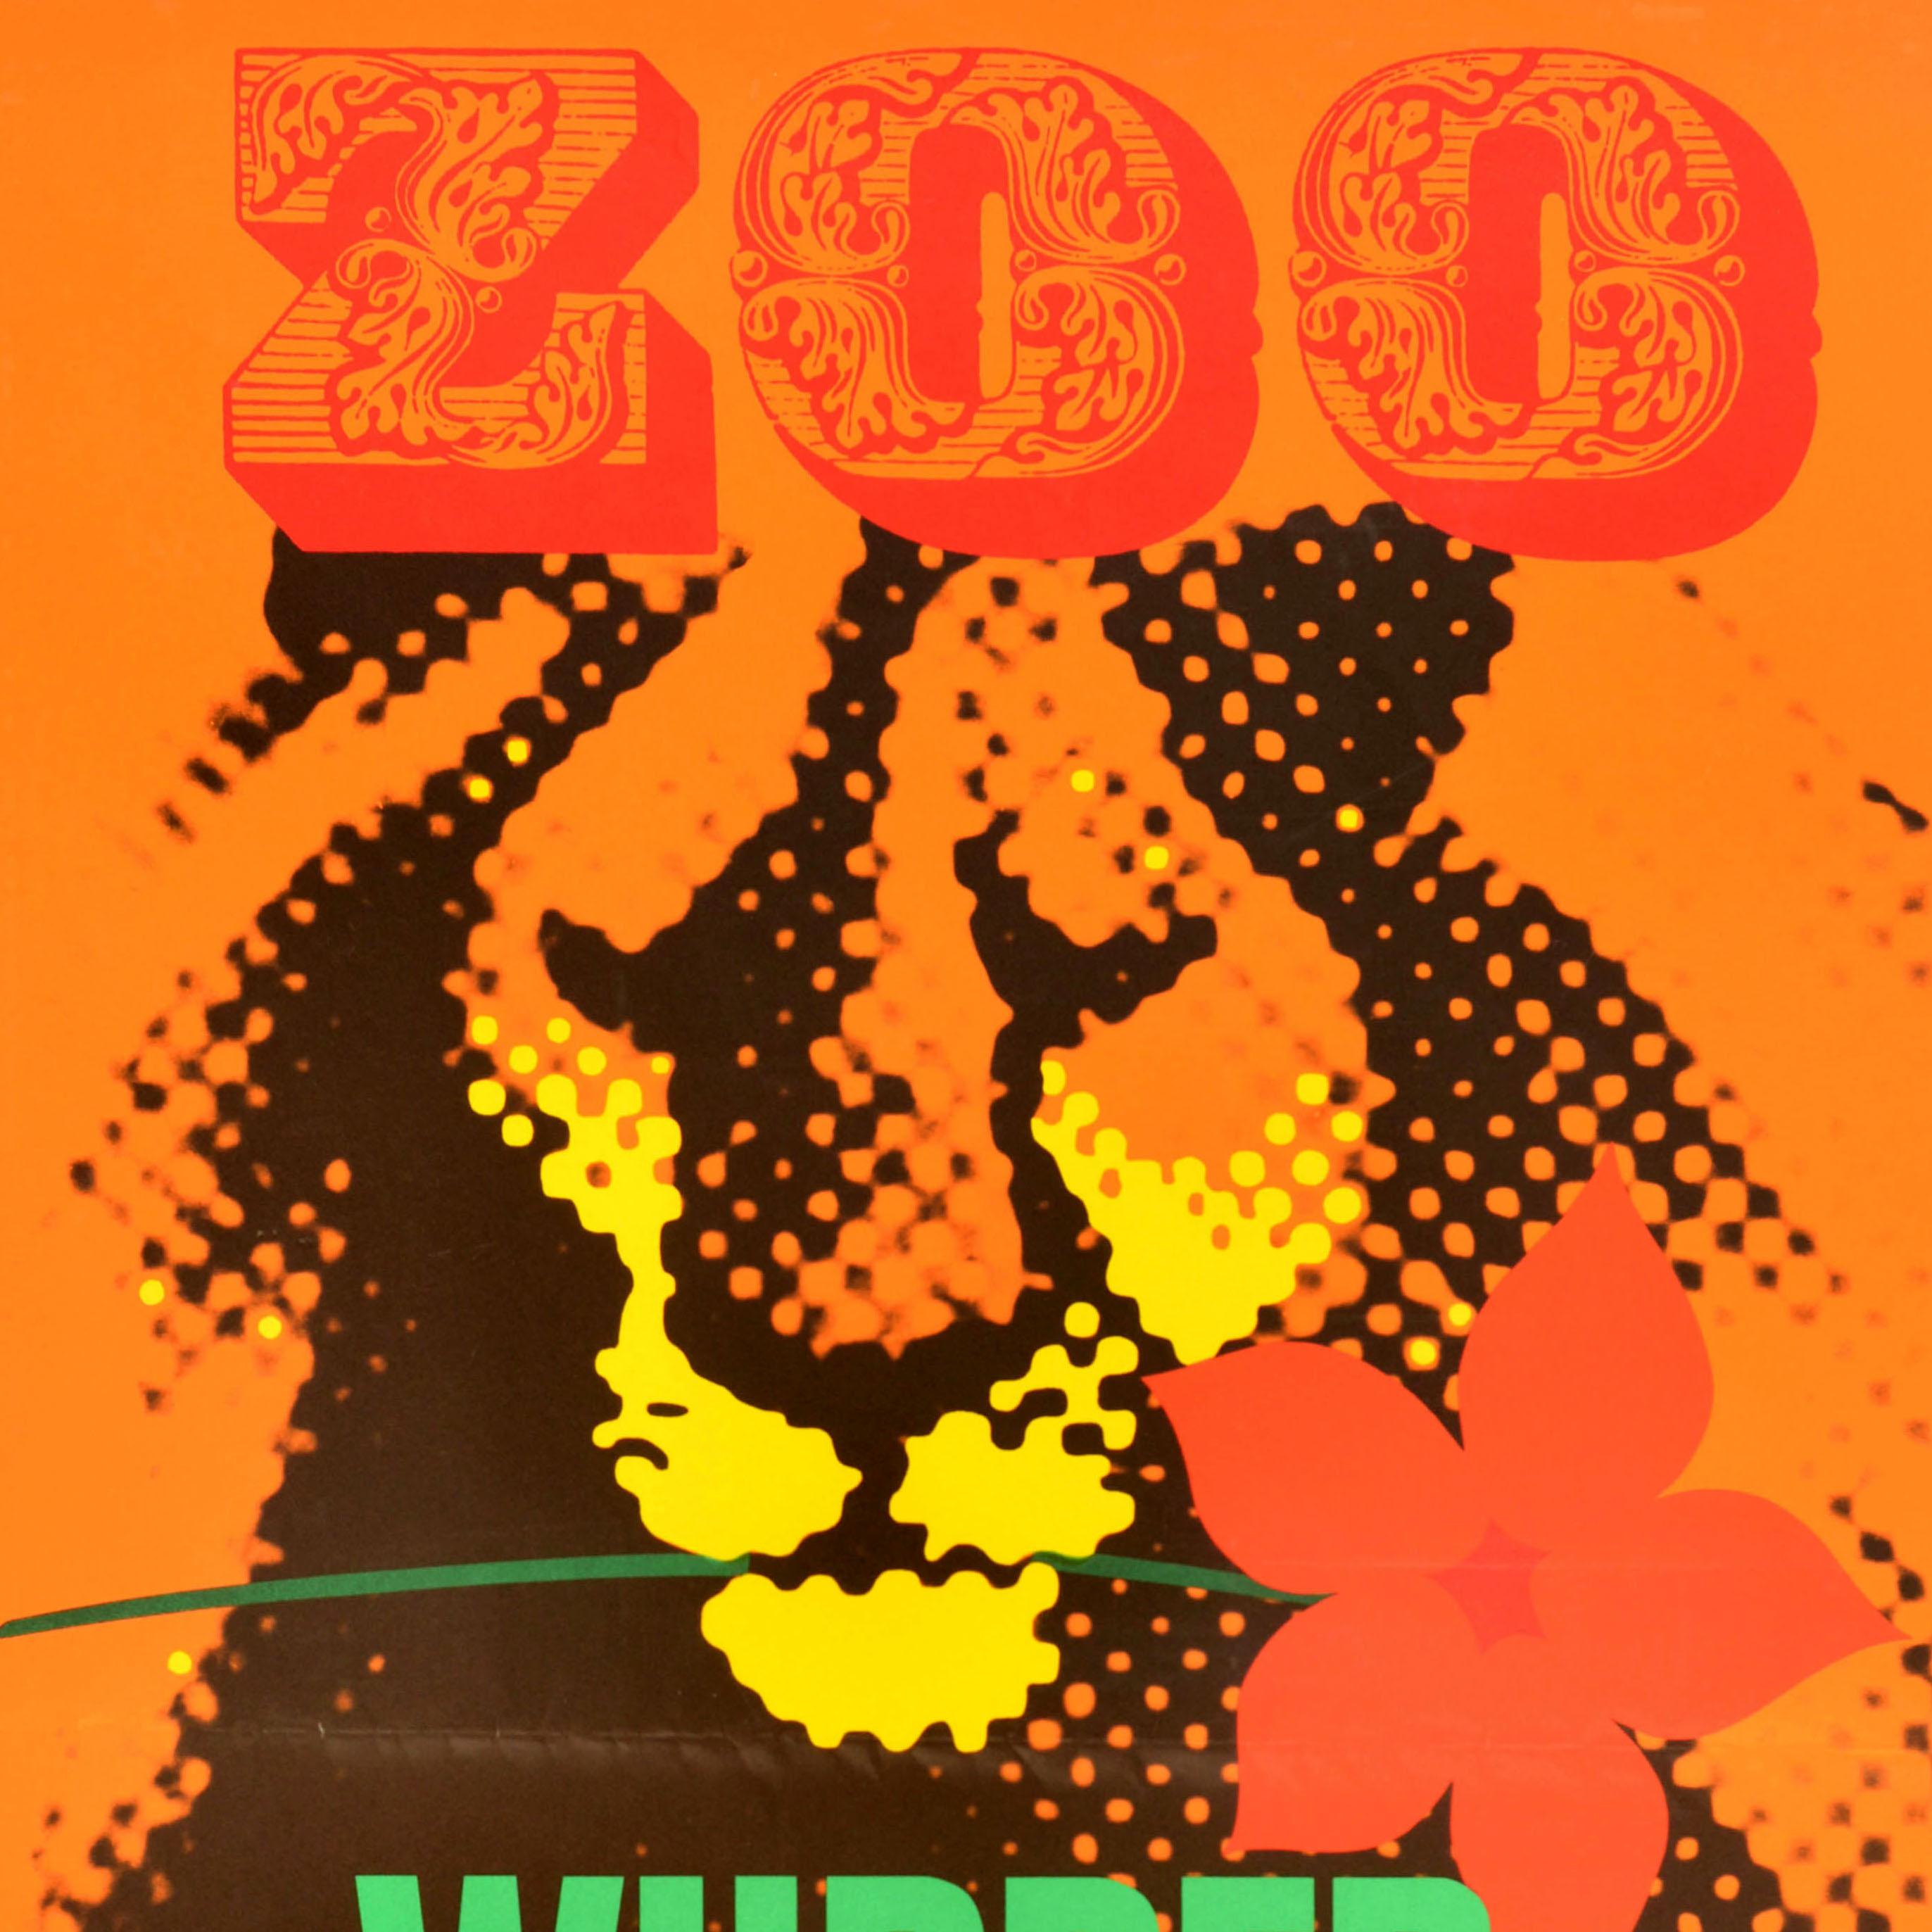 Original Vintage-Werbeplakat für den Wuppertaler Zoo mit einem farbenfrohen Motiv, das einen Löwen mit einer Blume im Maul vor einem orangefarbenen Hintergrund zeigt, darüber und darunter der Titeltext in fetten Zierbuchstaben. Der 1879 als